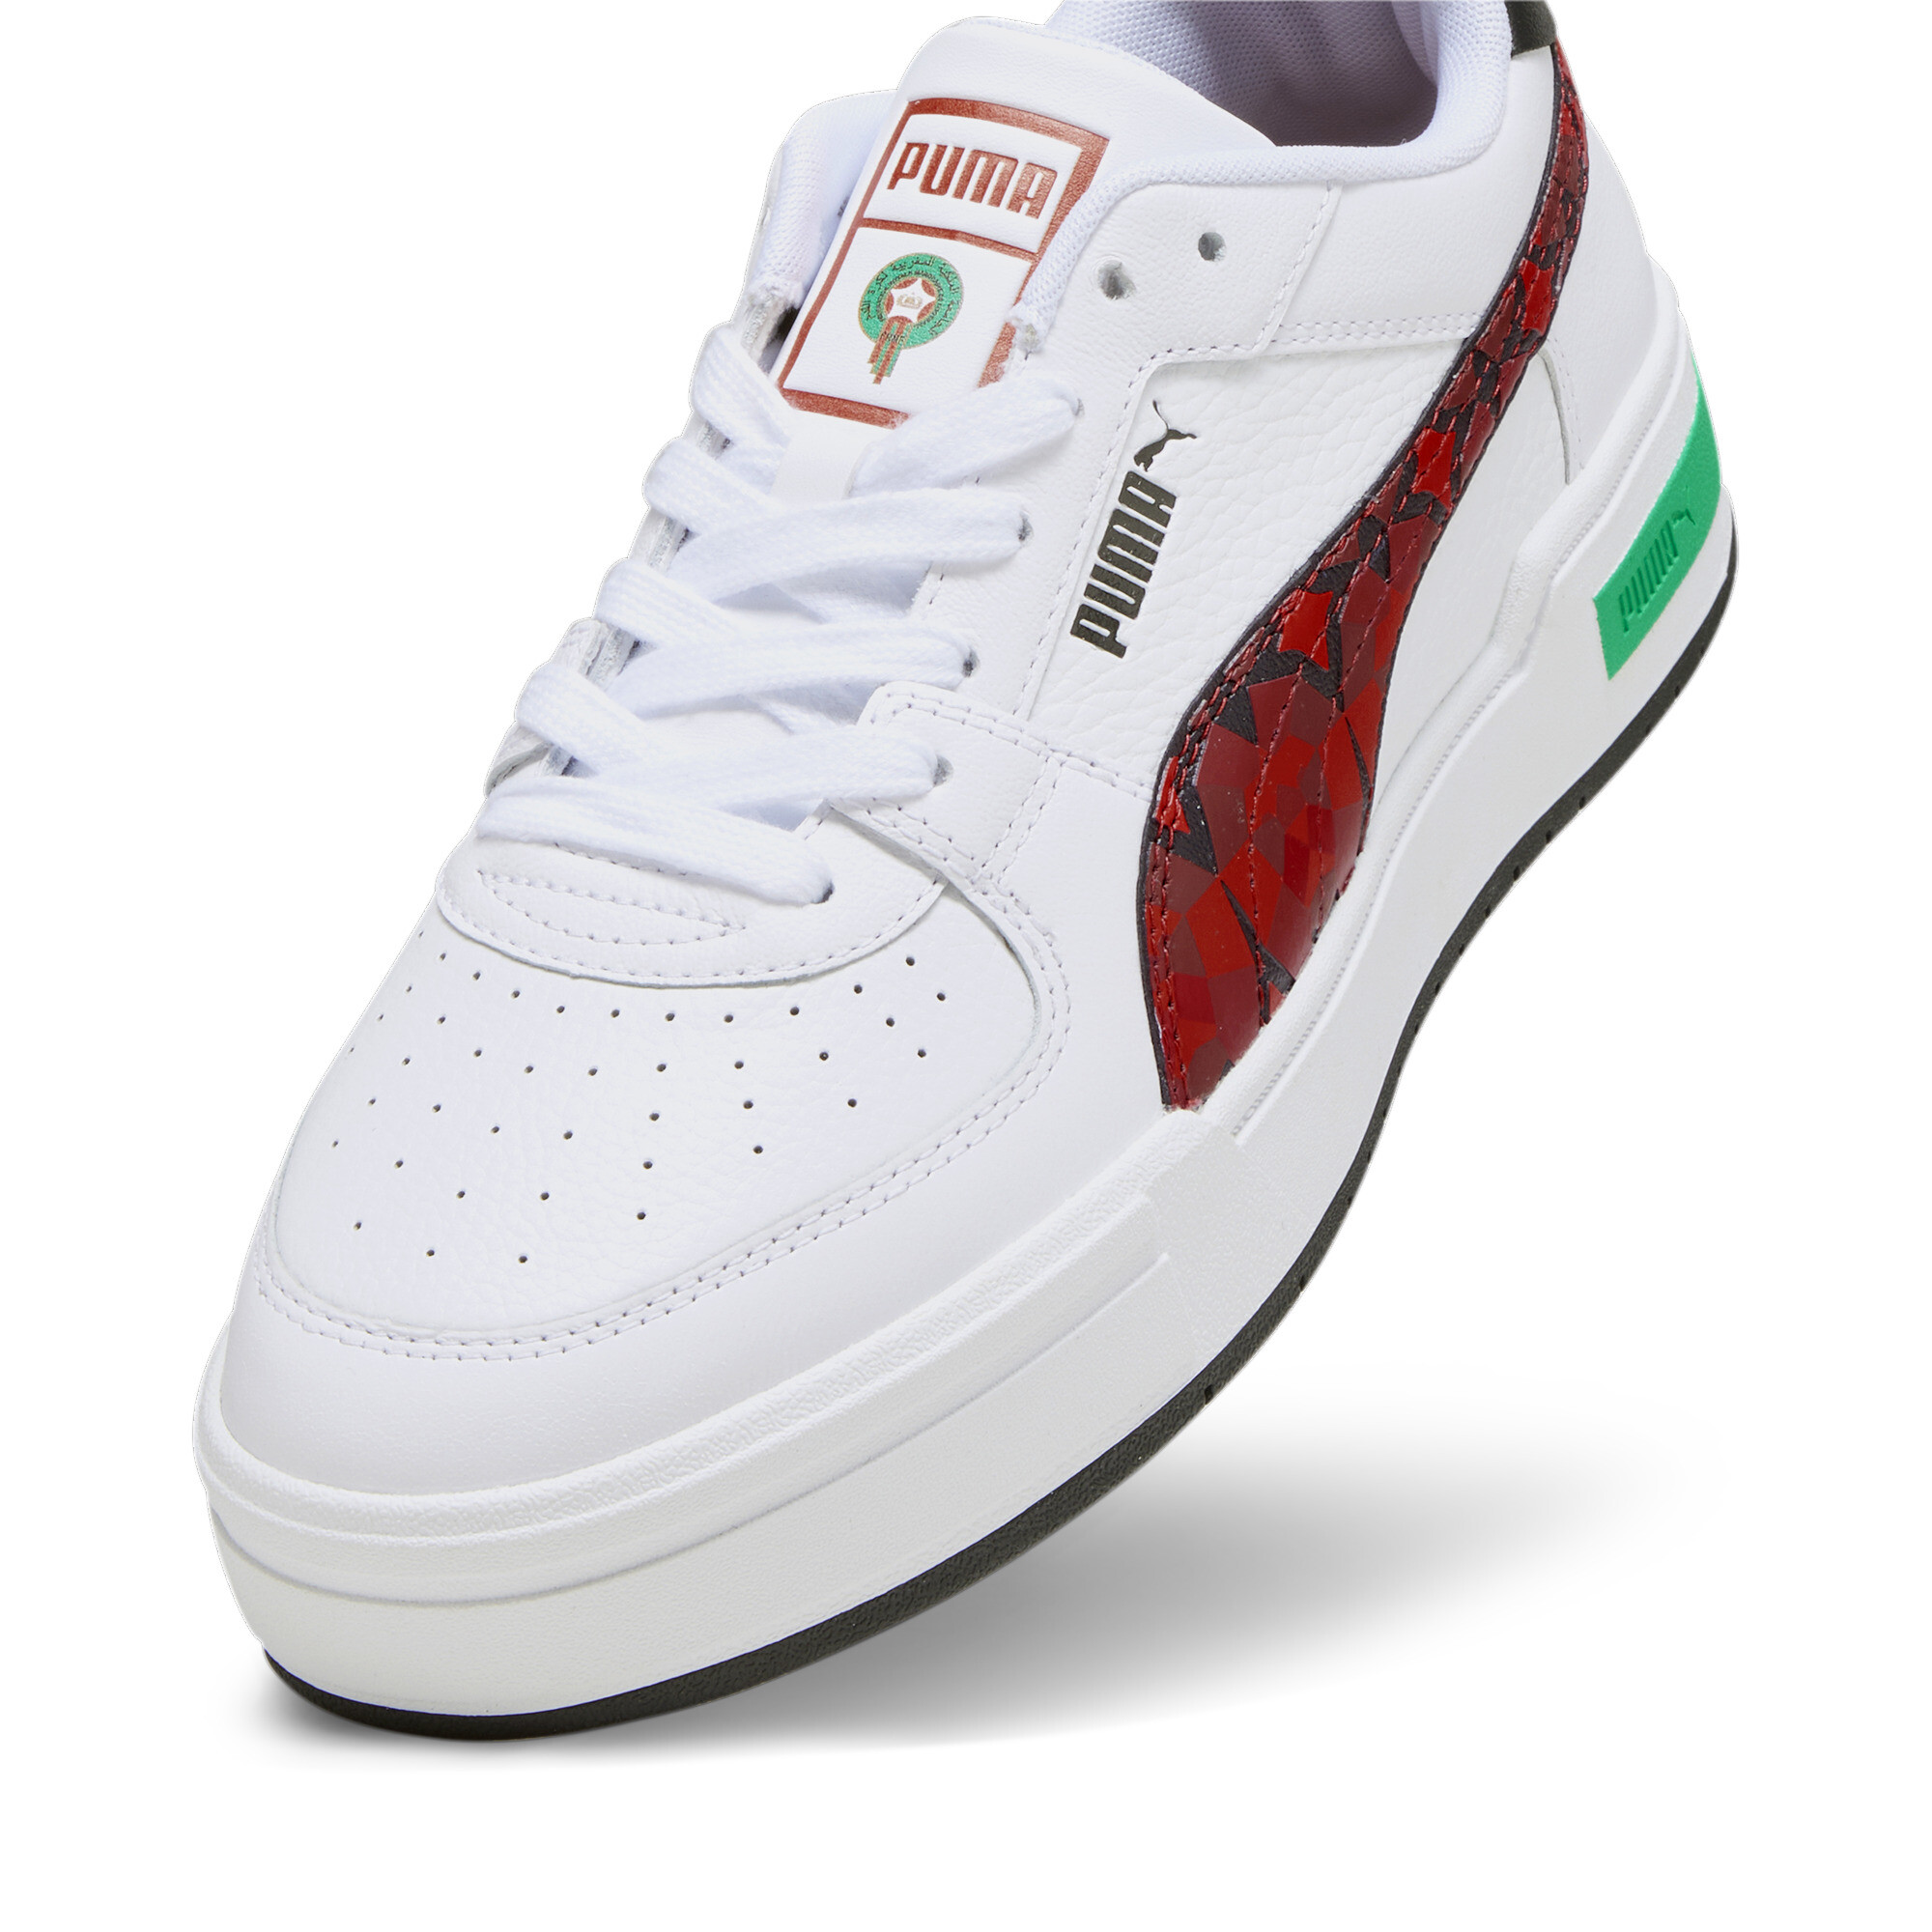 Men's PUMA CA Pro Morocco Football Sneakers In White, Size EU 46